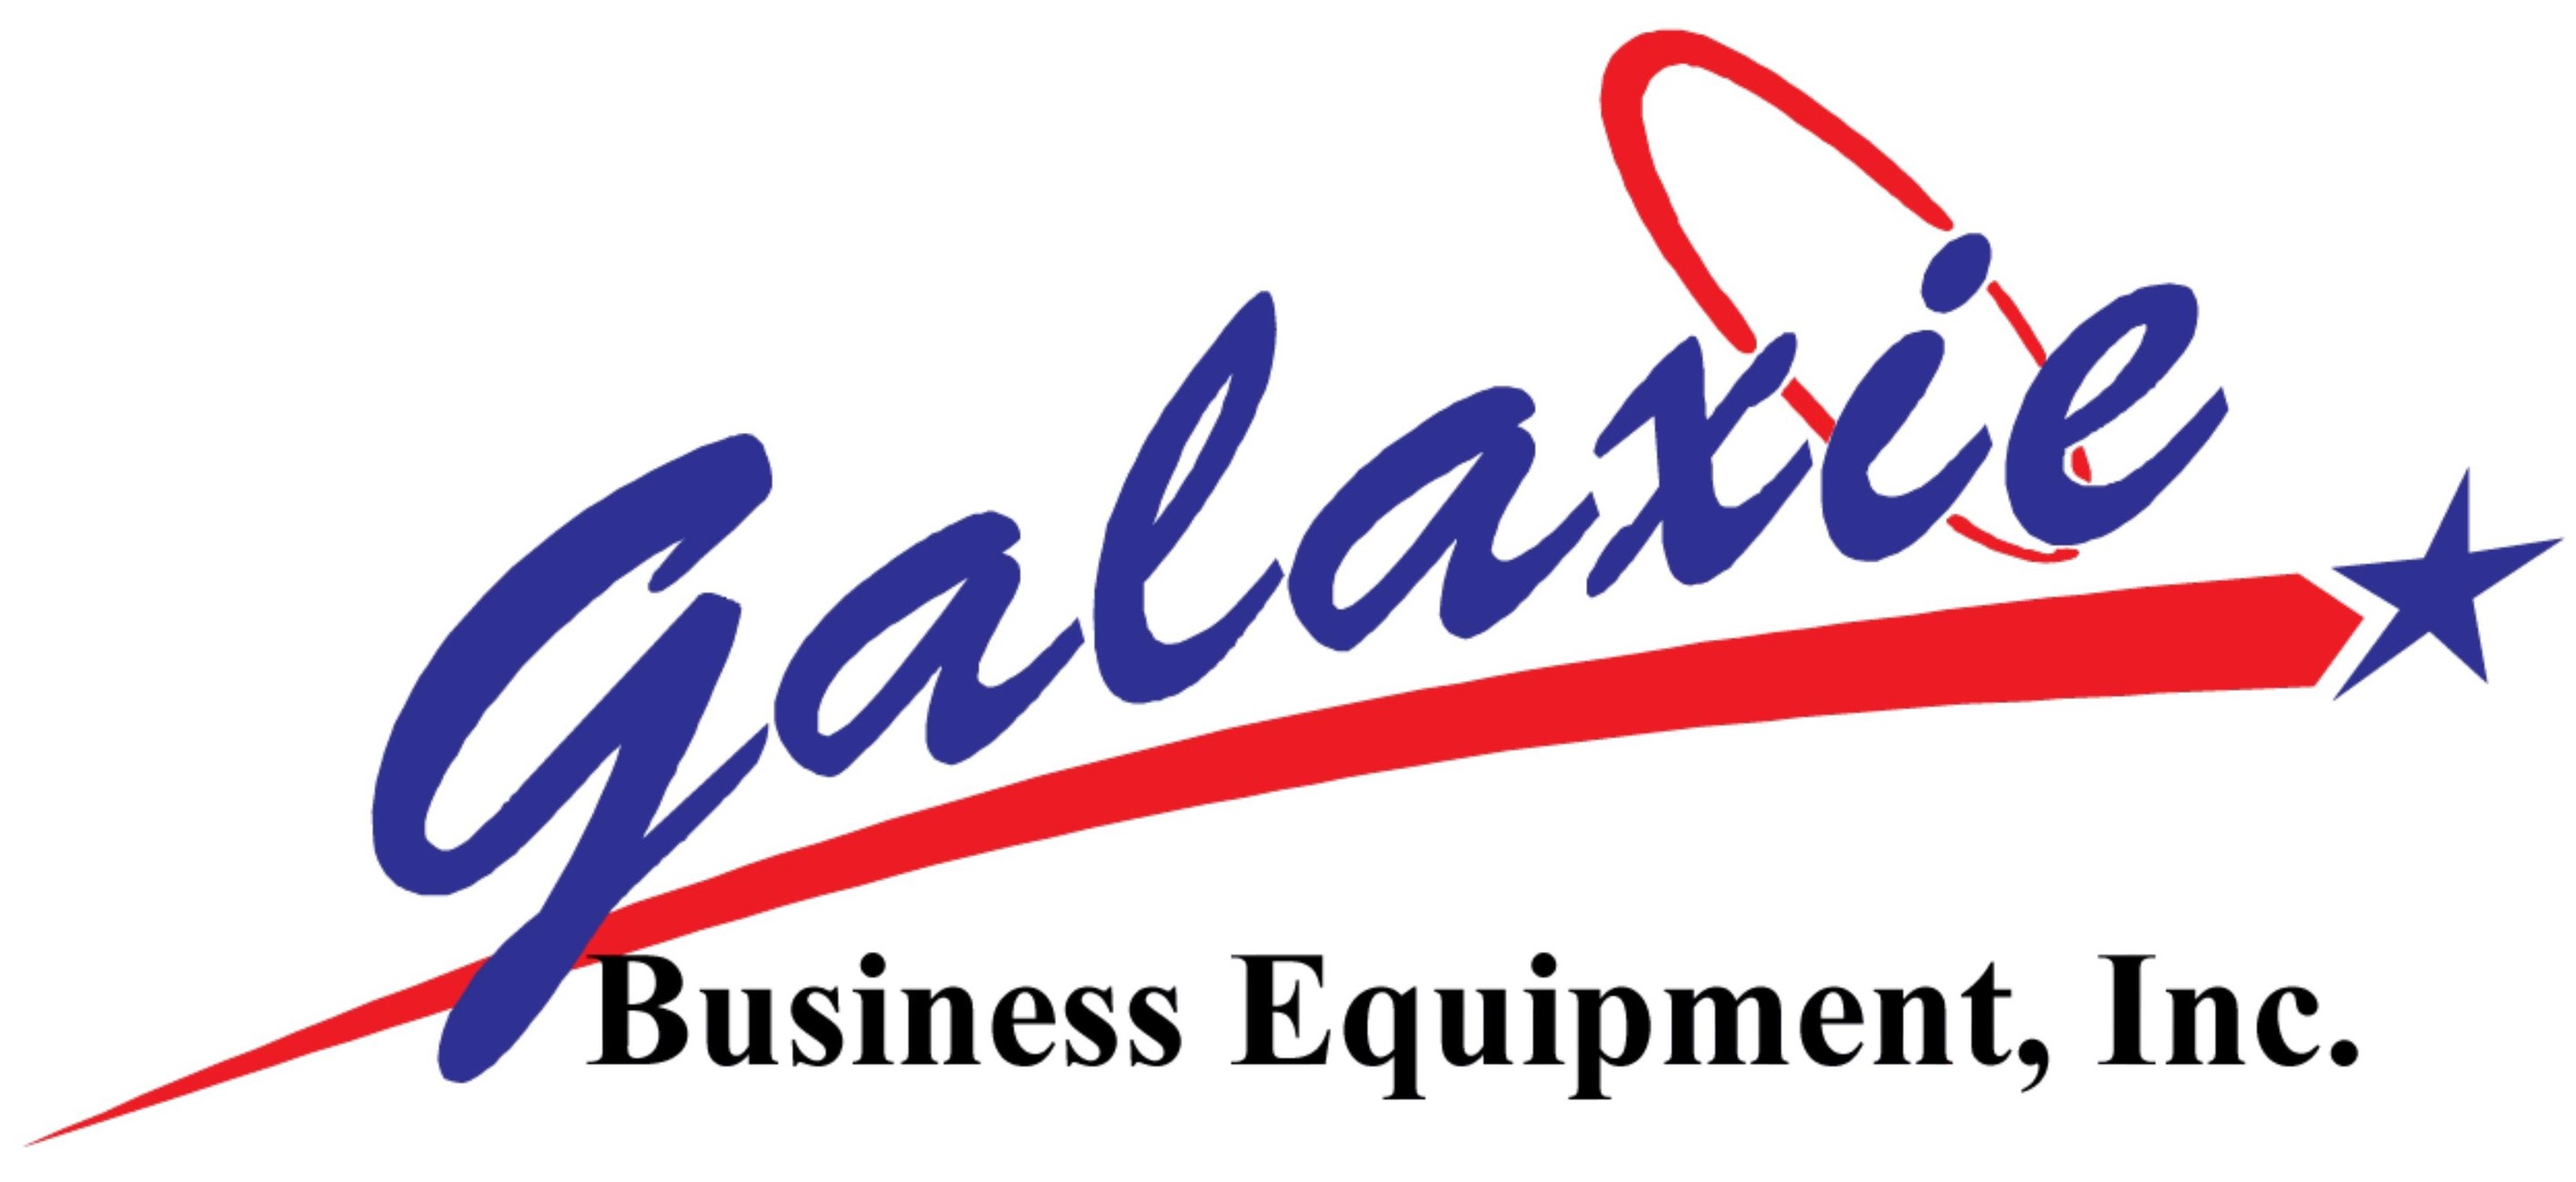 Galaxie Business Equipment, Inc.